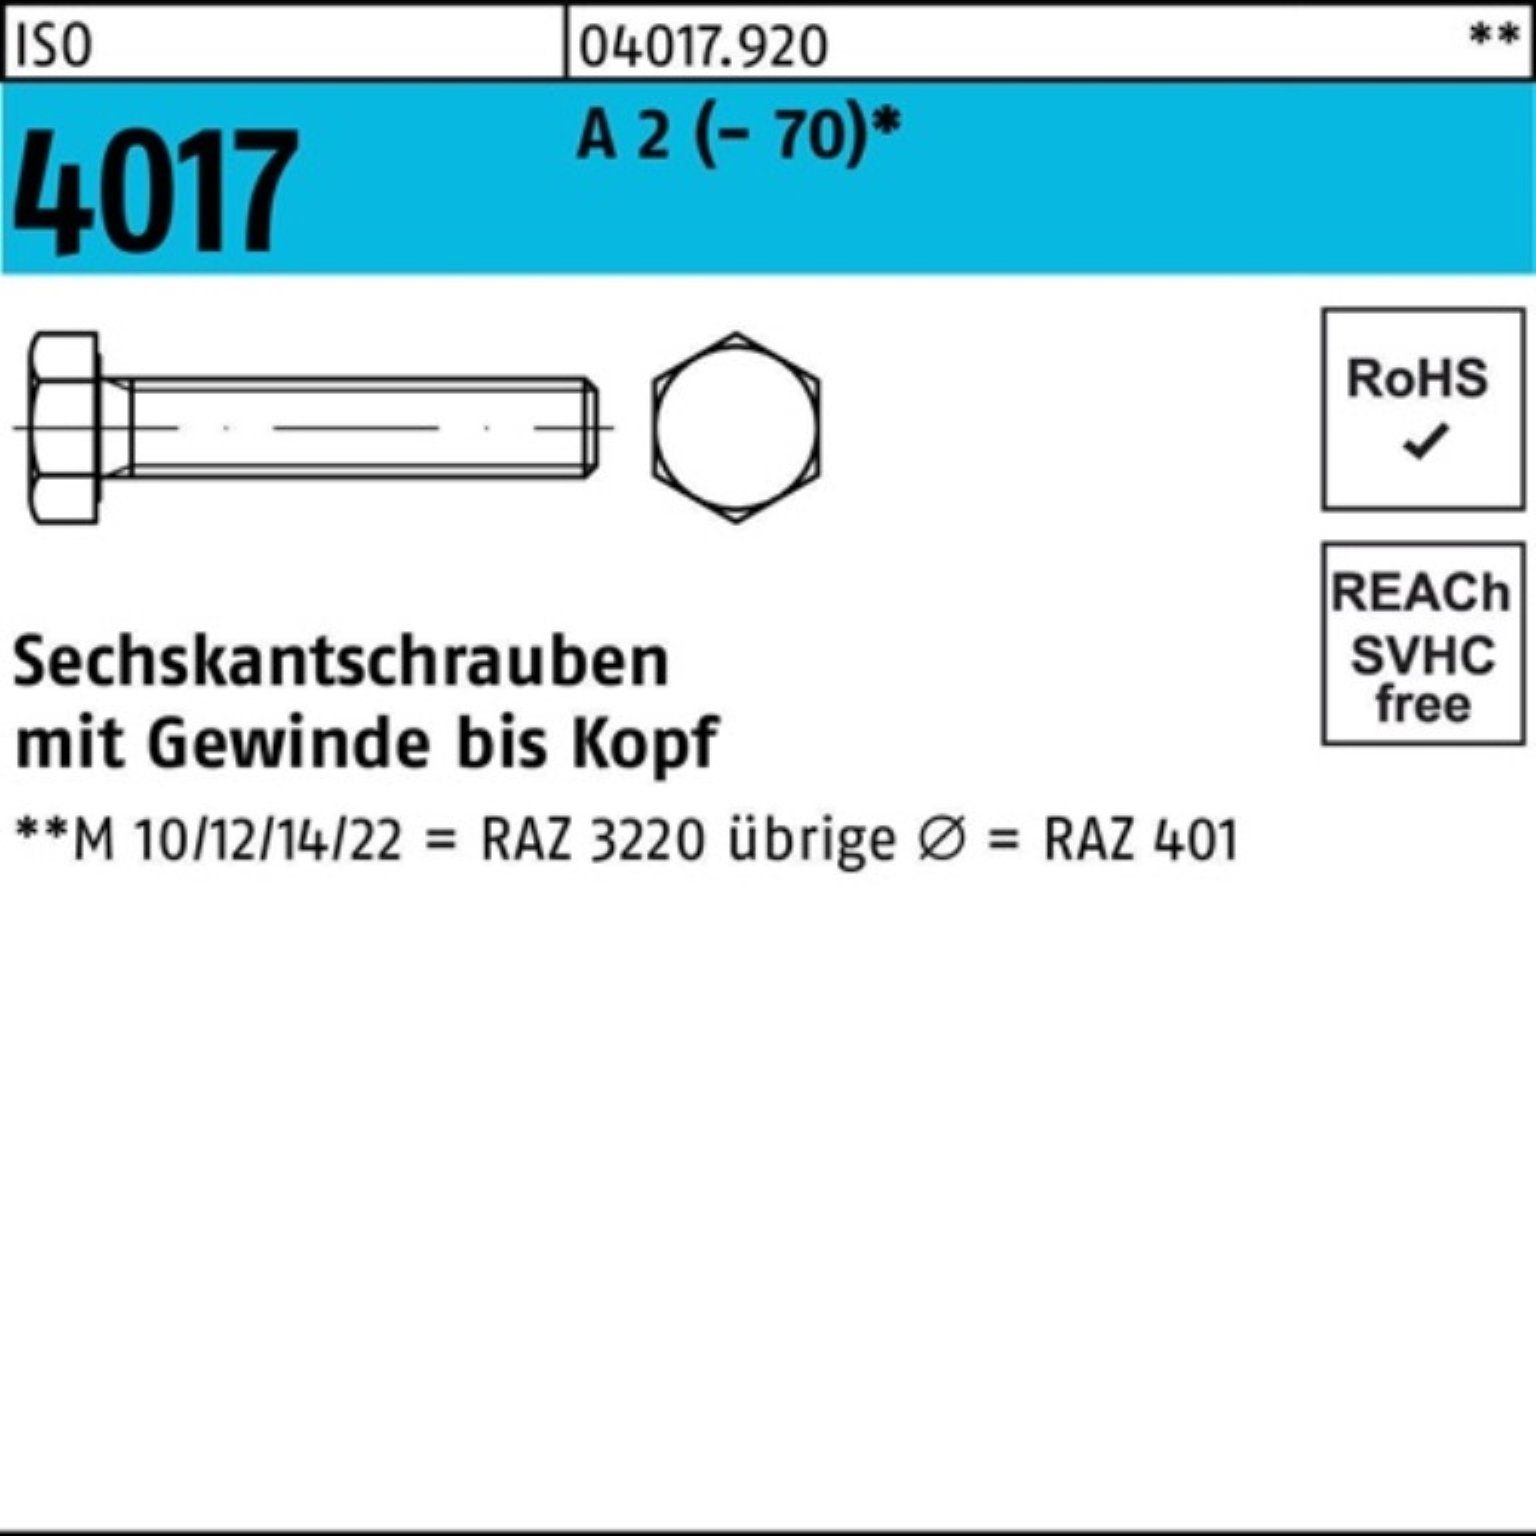 ISO (70) Pack Sechskantschraube Sechskantschraube VG Stück A Bufab 120 M16x 2 4017 100er 25